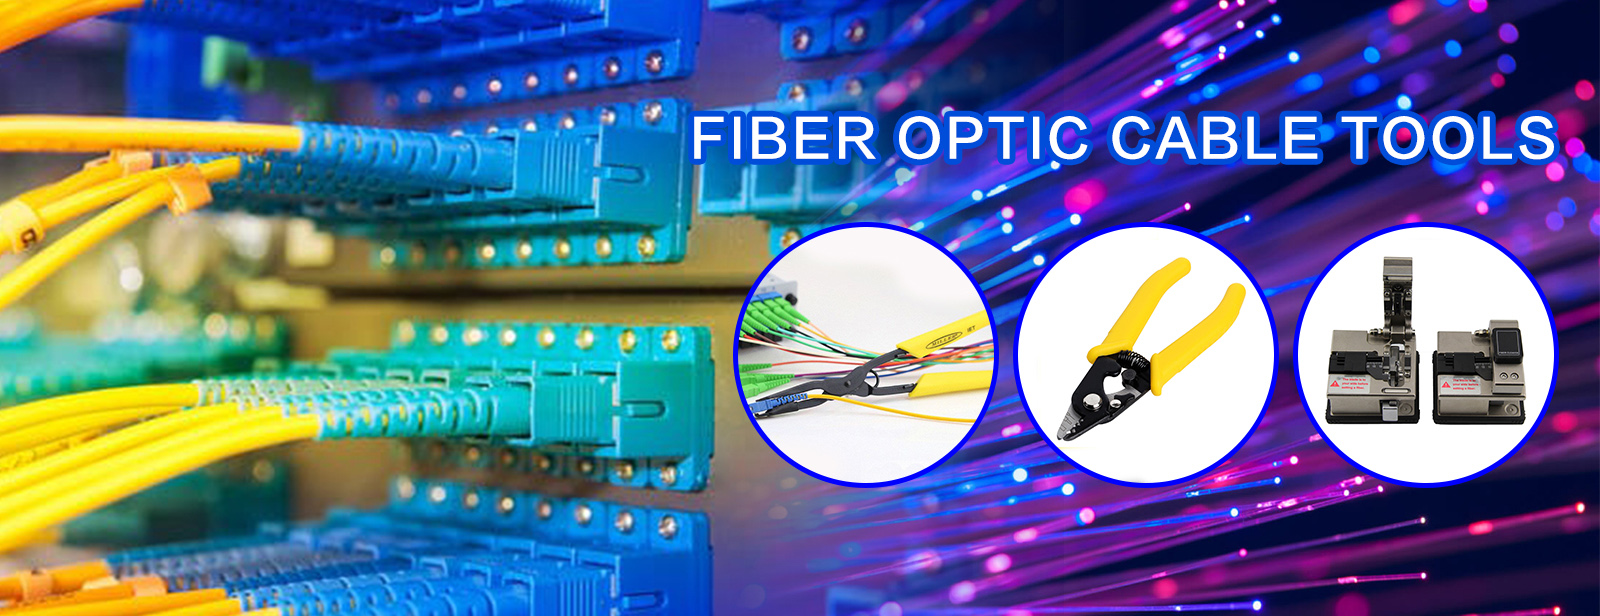 Fiber Optic Cable Tools